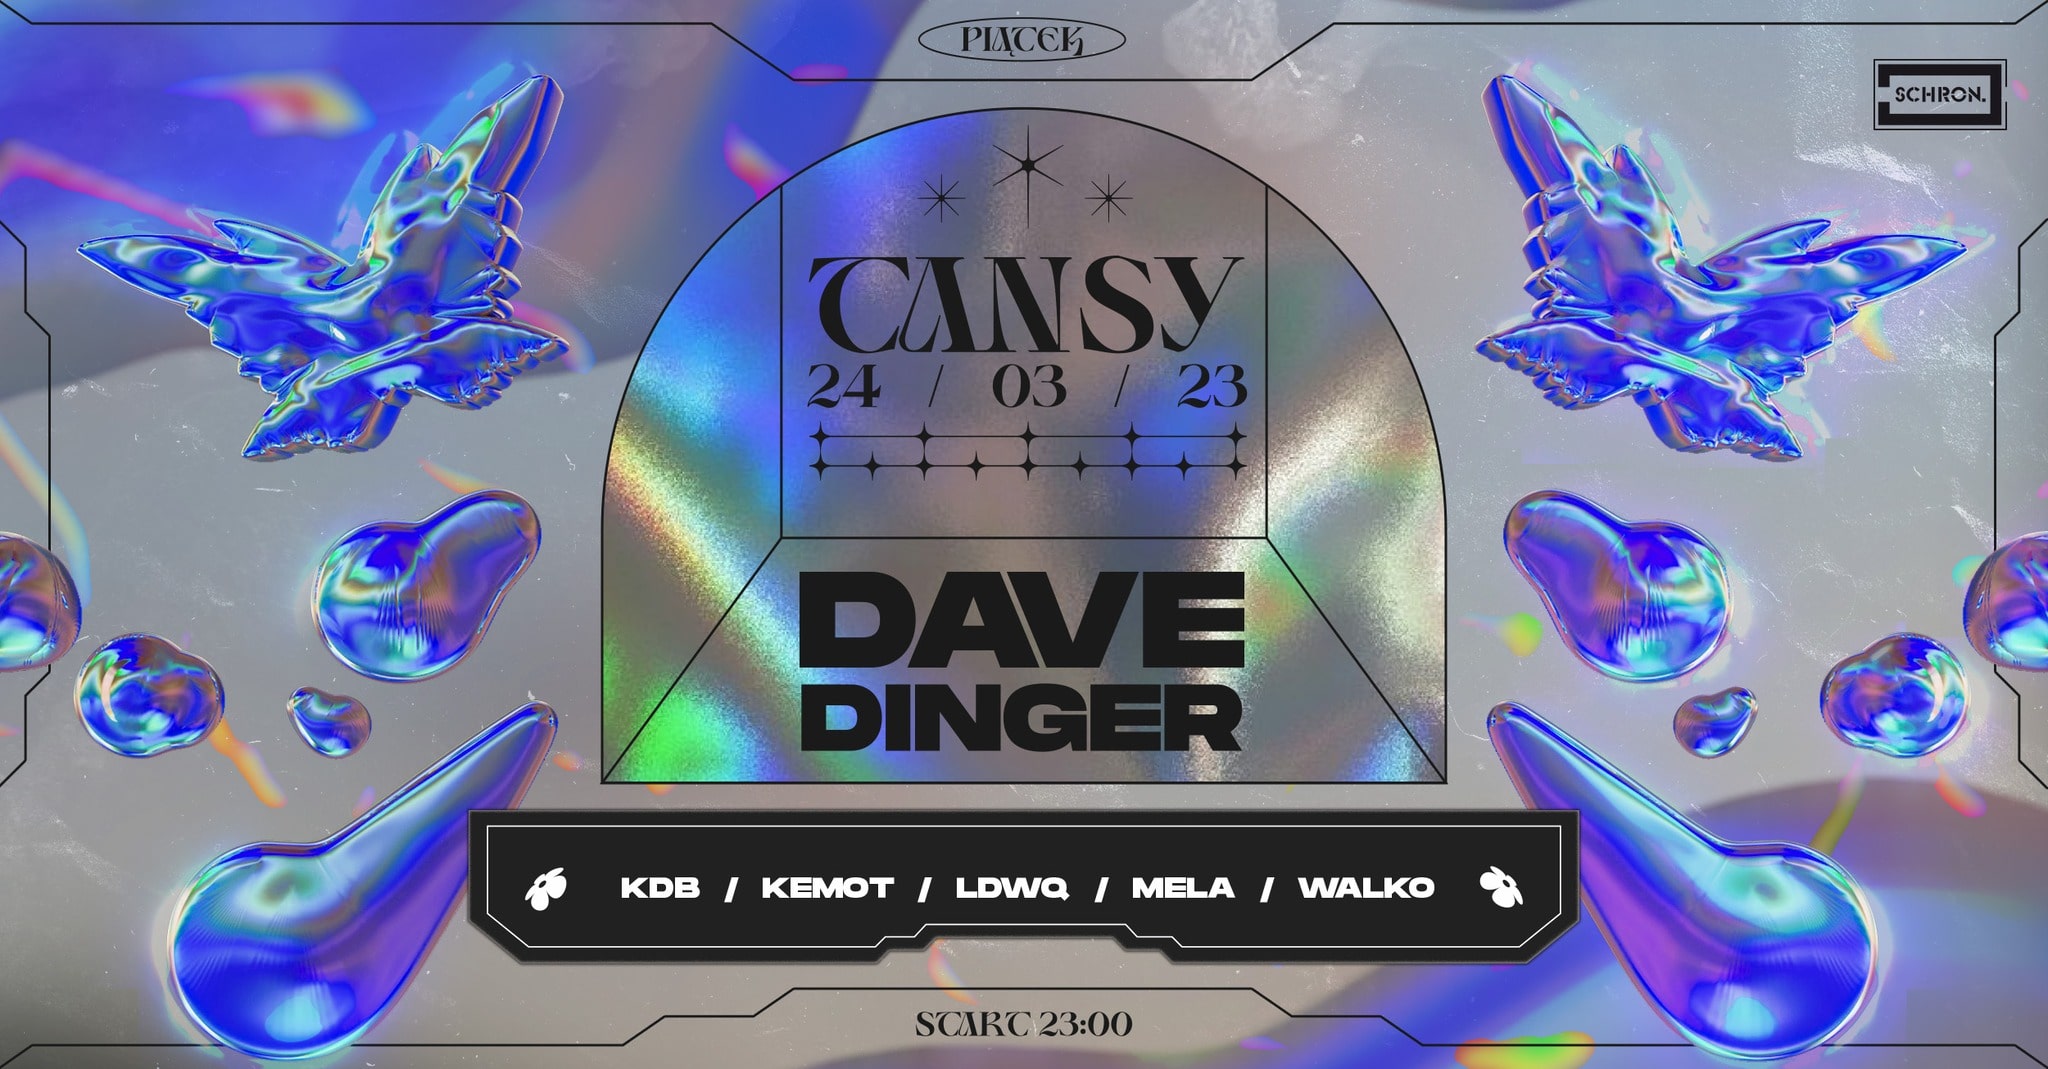 TANSY: Dave Dinger